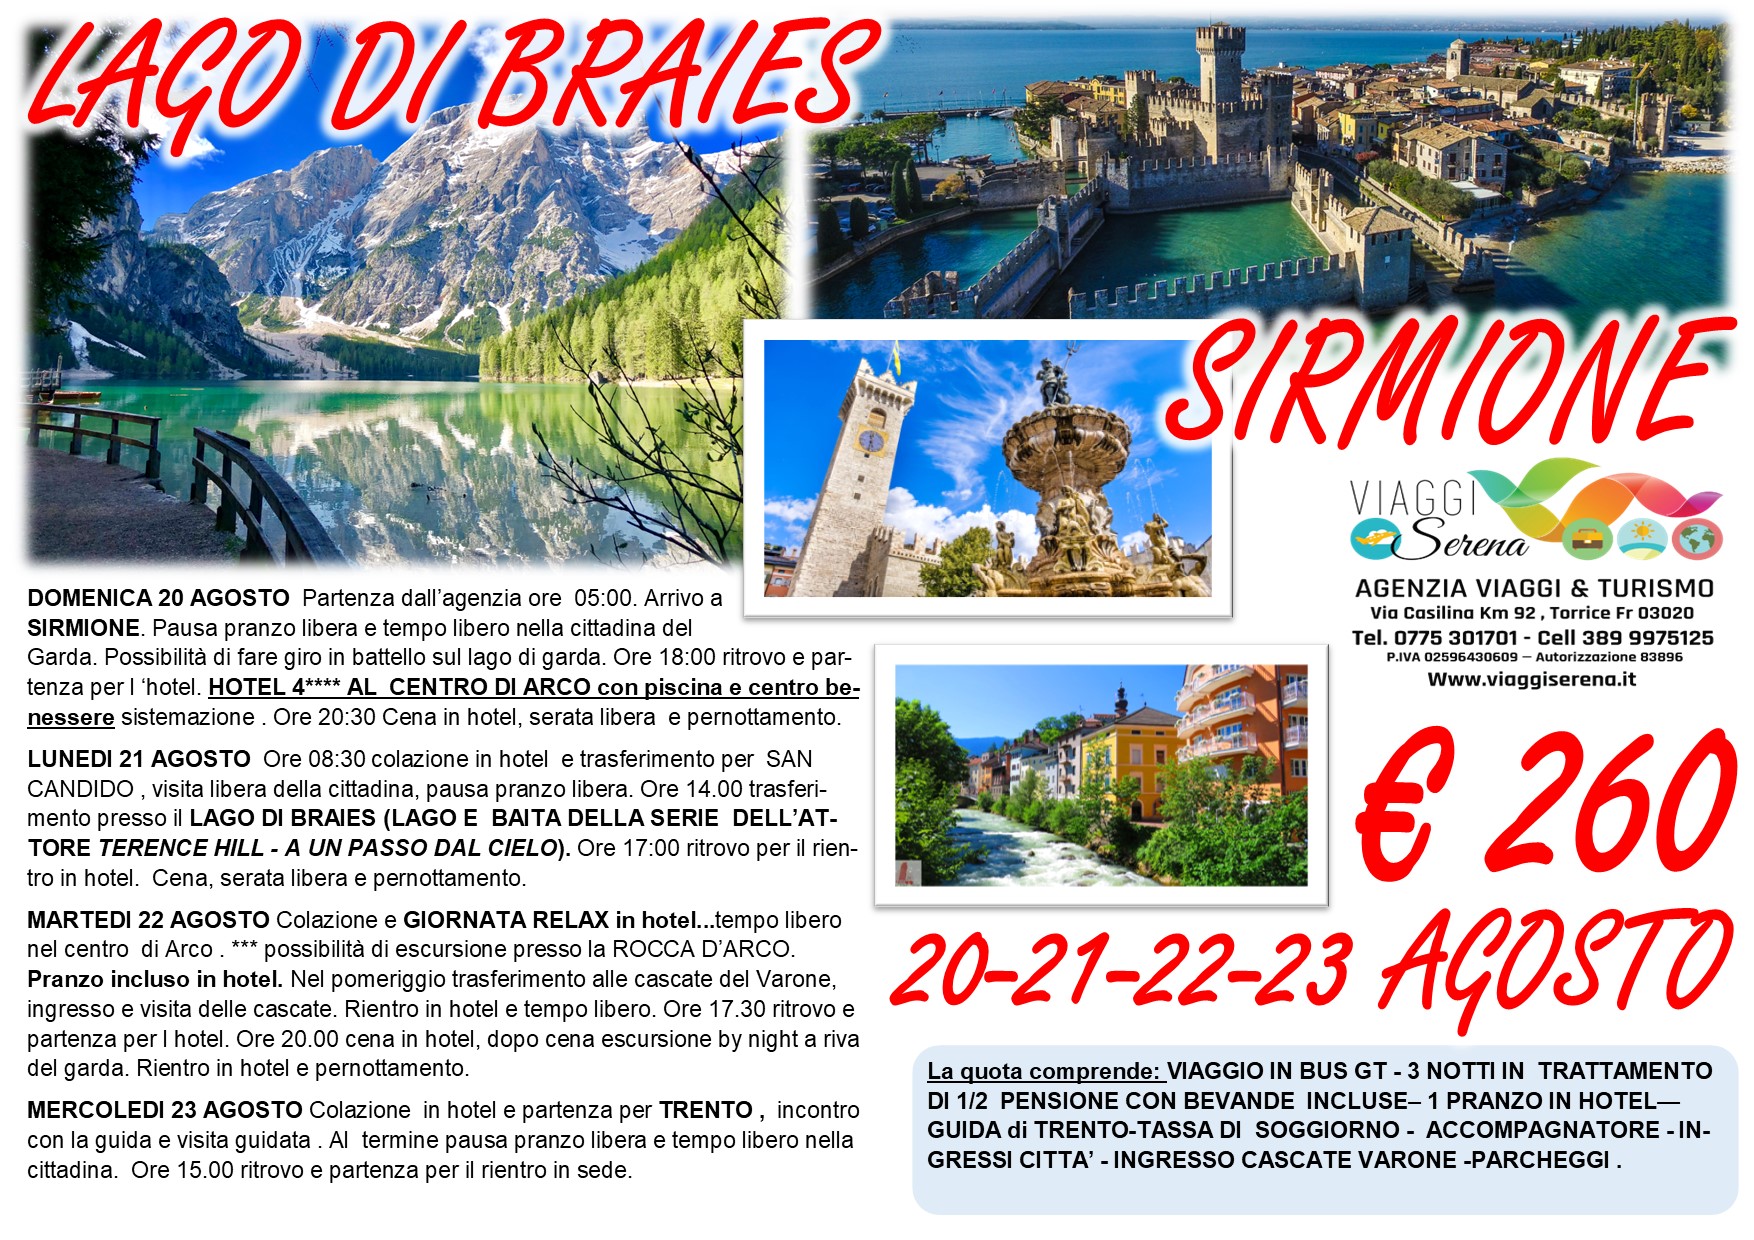 Viaggi di Gruppo: Sirmione, Lago di Braies, Candido,  Cascate del Varone & Trento 20-21-22-23 Agosto € 260,00